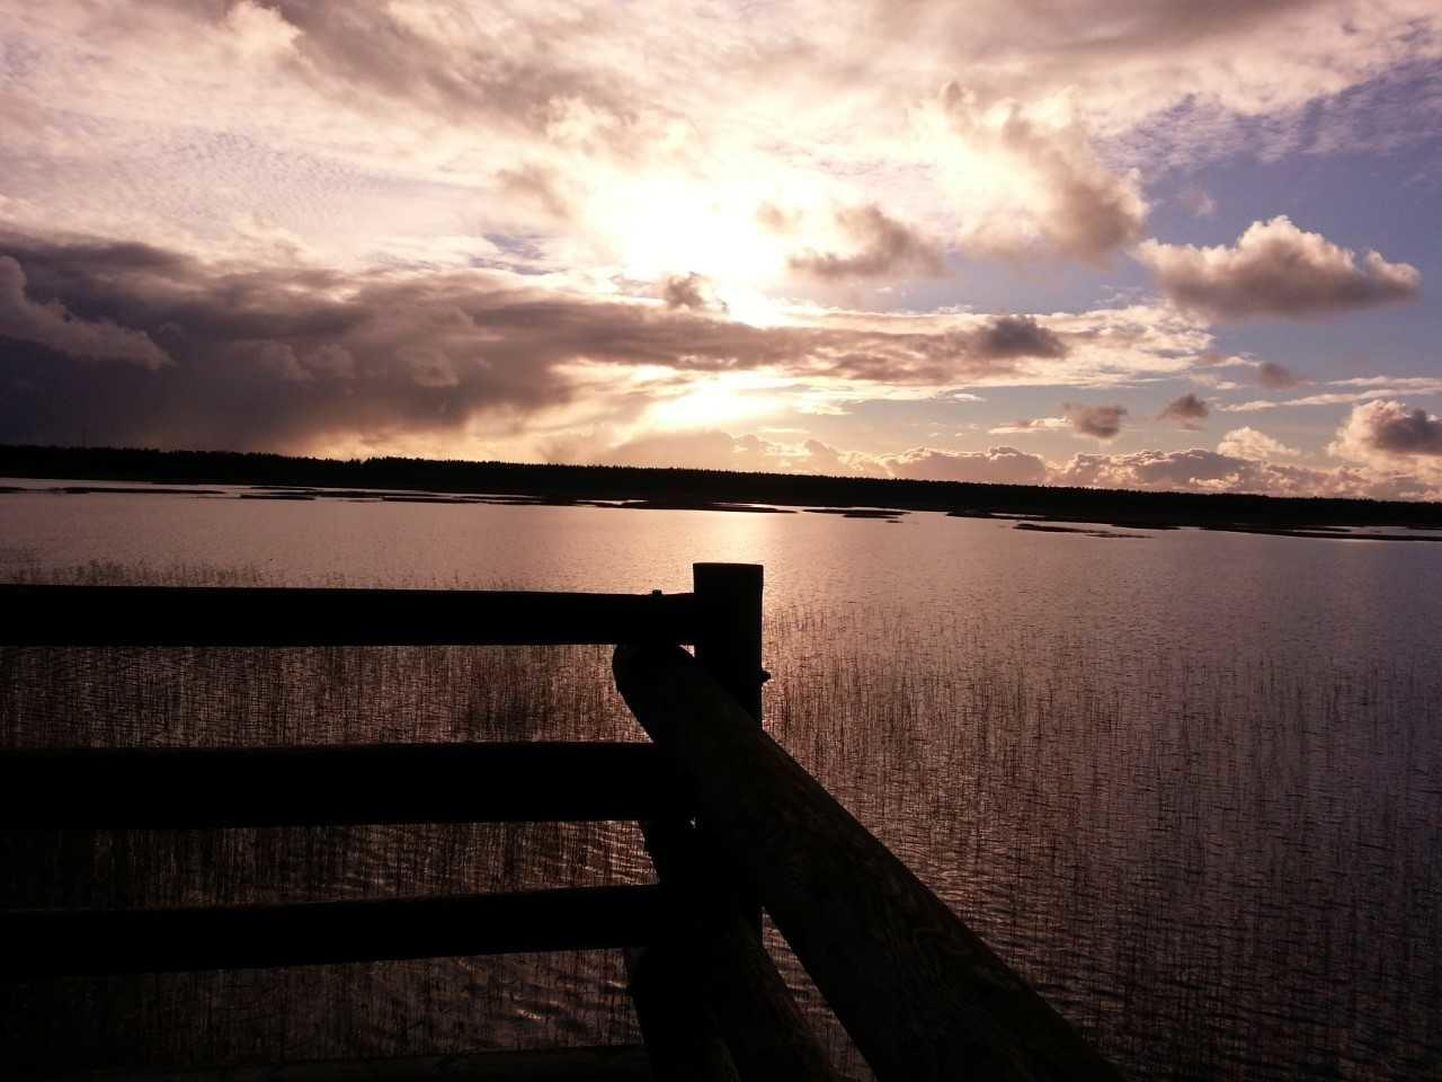 Tõhela järv on Eesti üks olulisemaid kiilide sigimisalasid ja Pärnumaa kiilide tähtsaim elupaik.